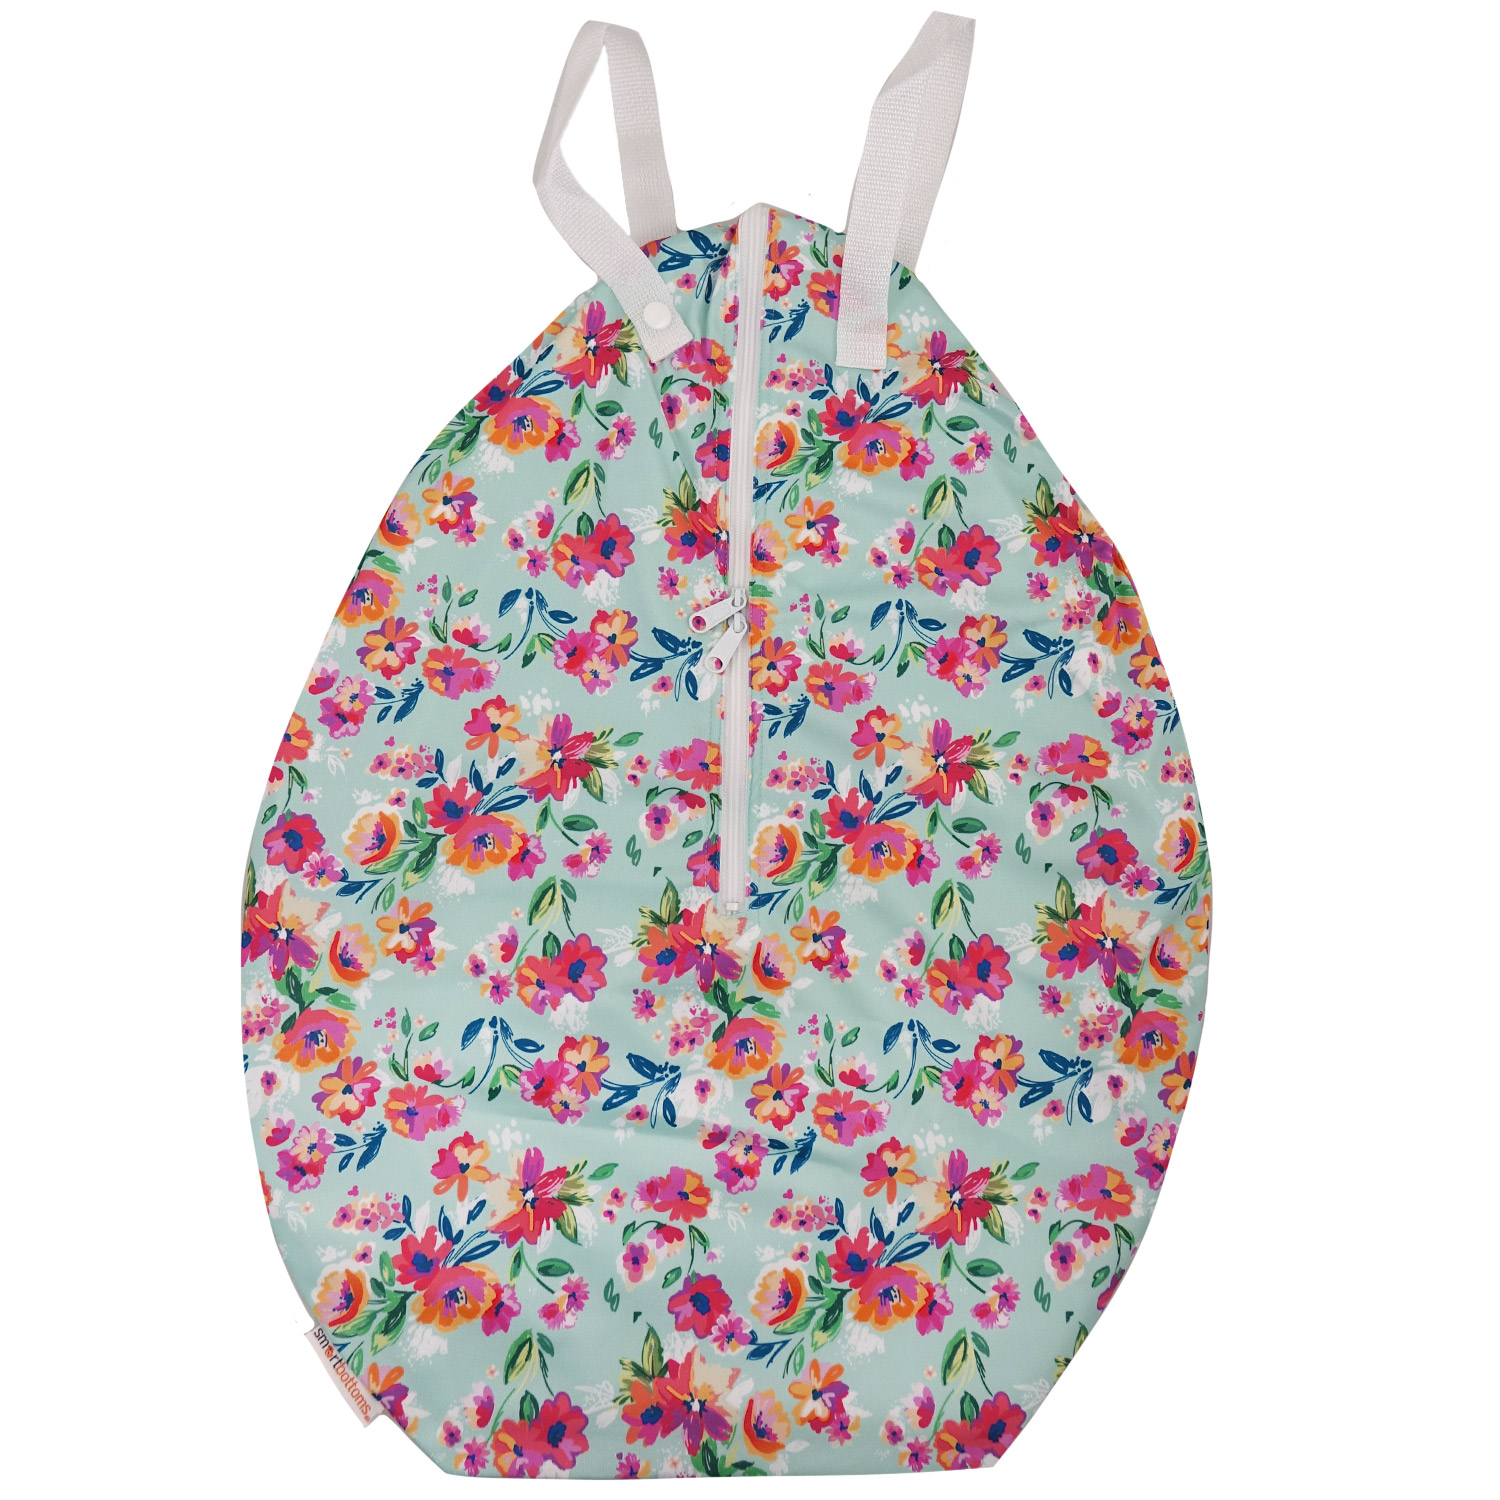 Smart Bottoms Hanging Wet Bag (L) Pattern: Aqua Floral